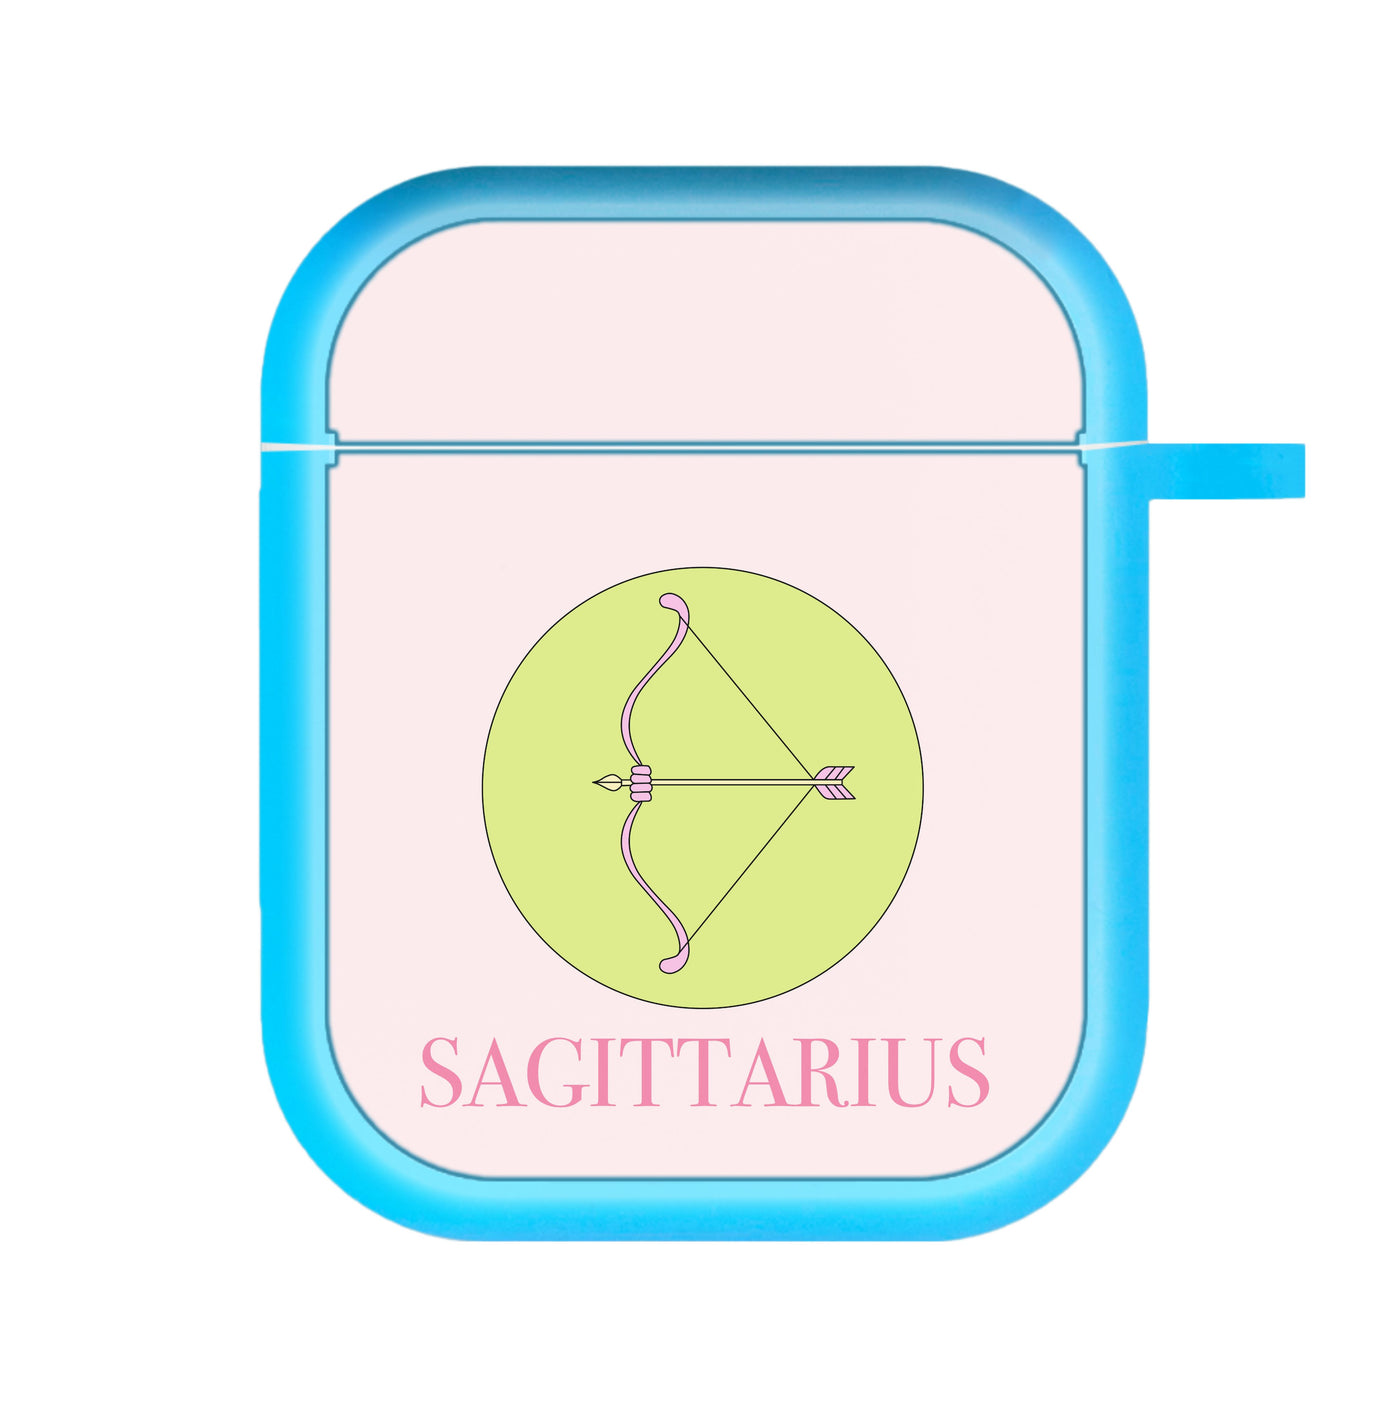 Sagittarius - Tarot Cards AirPods Case